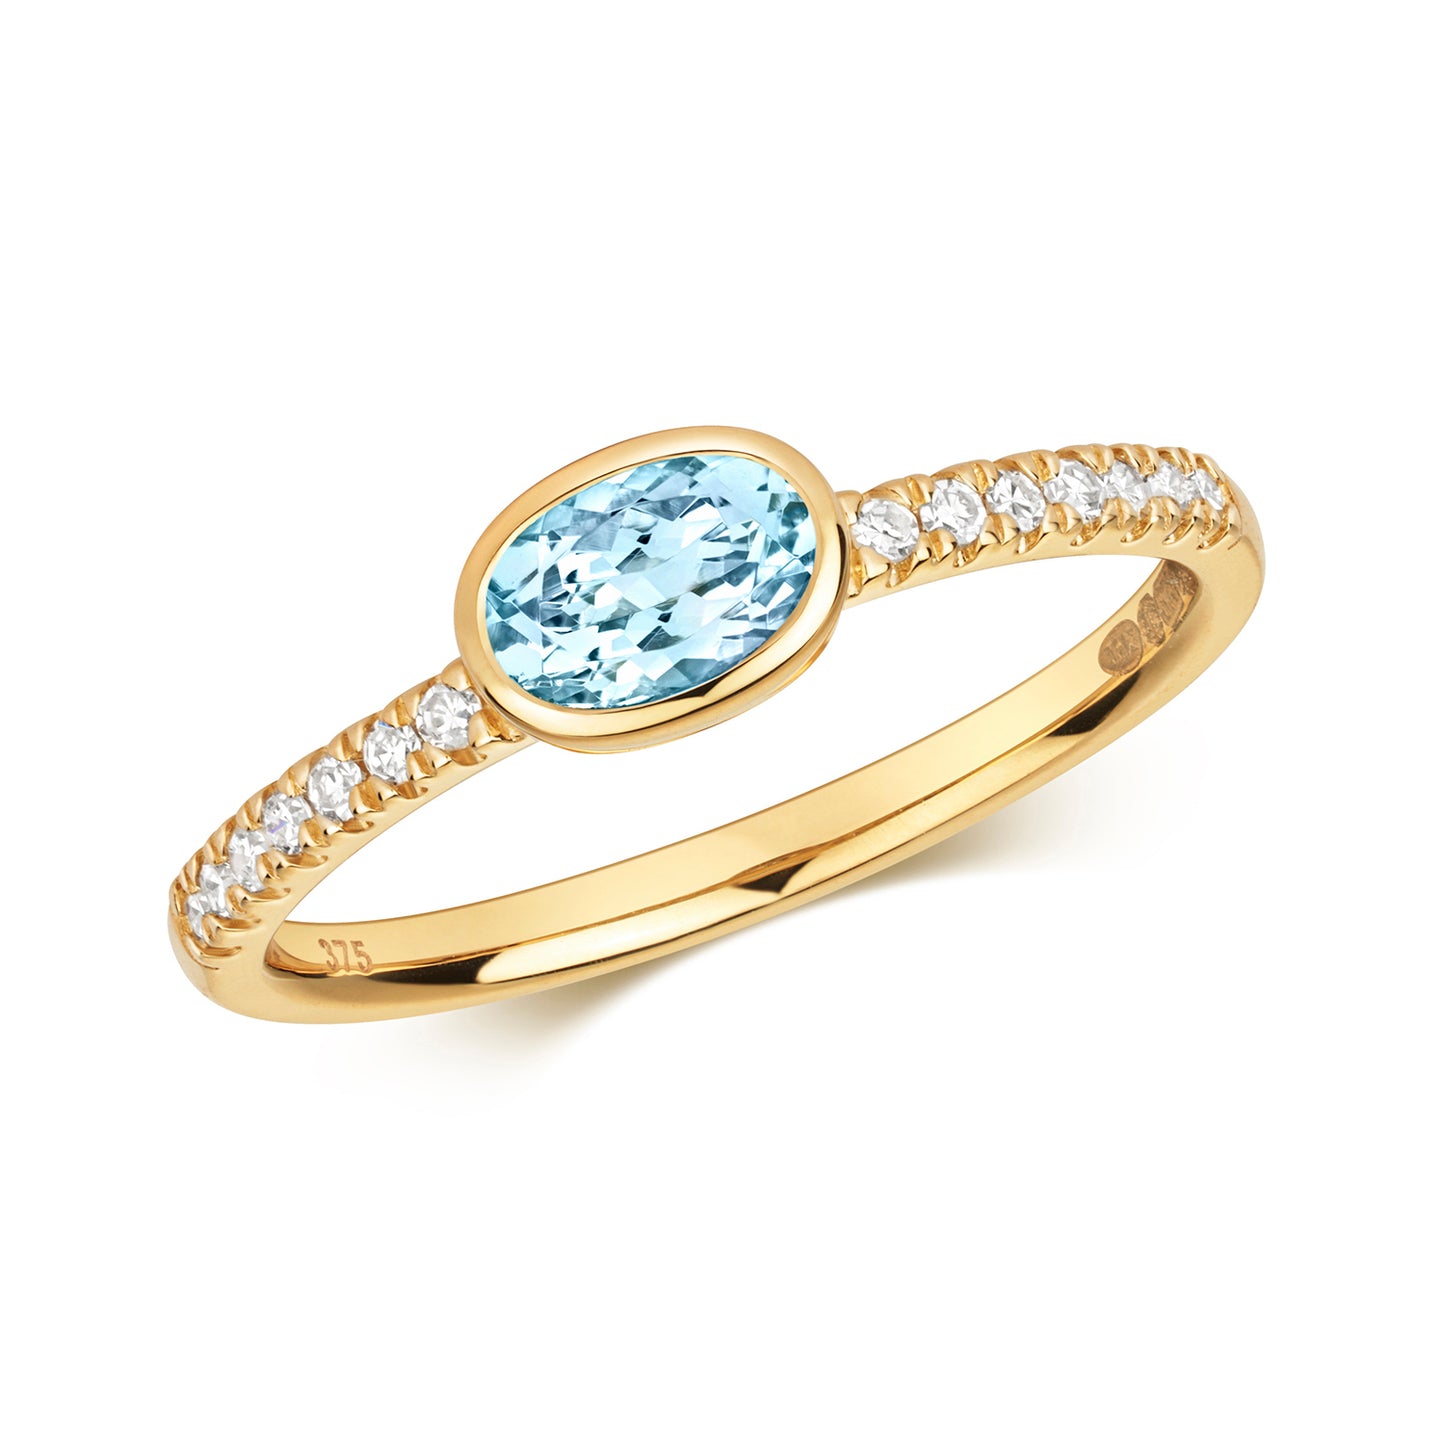 9ct Yellow Gold Aquamarine and Diamond Ring, Ring Sizes J to Q (490)